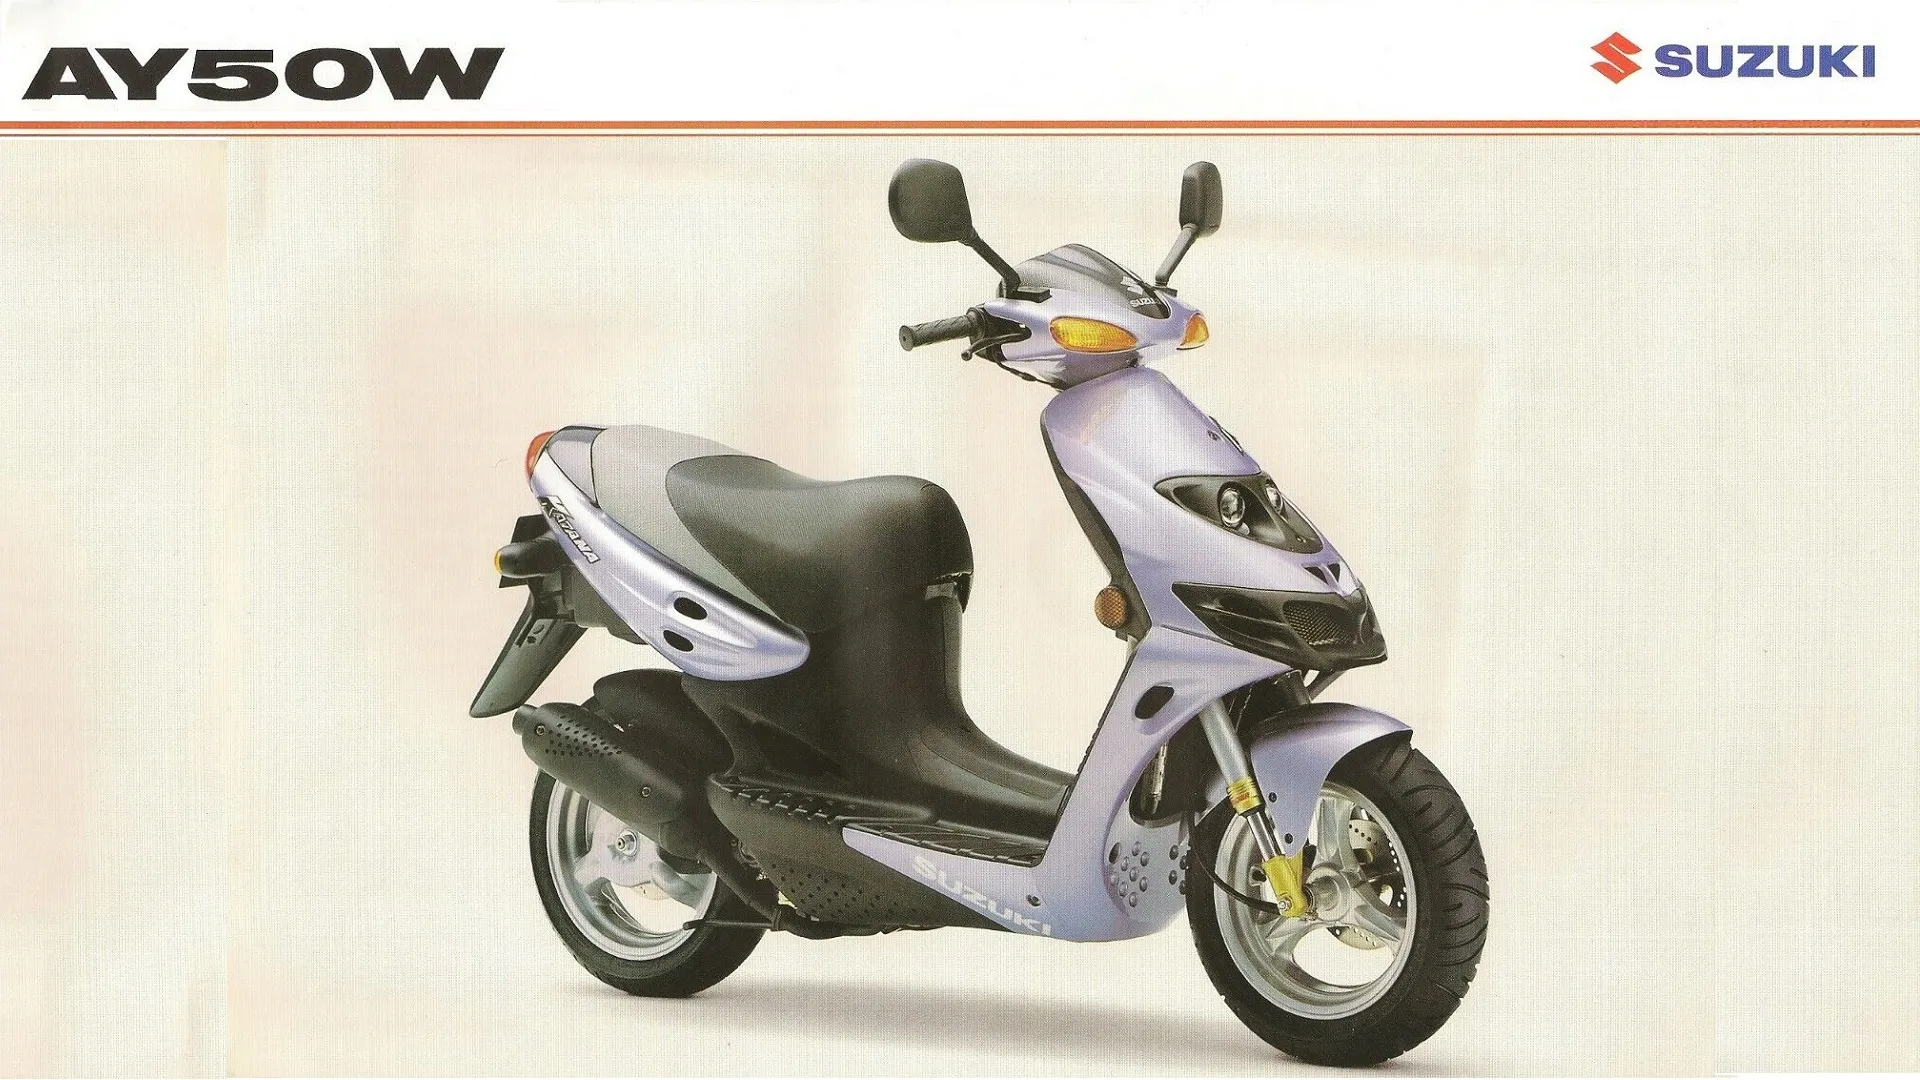 Moto del día: Suzuki AY50 Katana